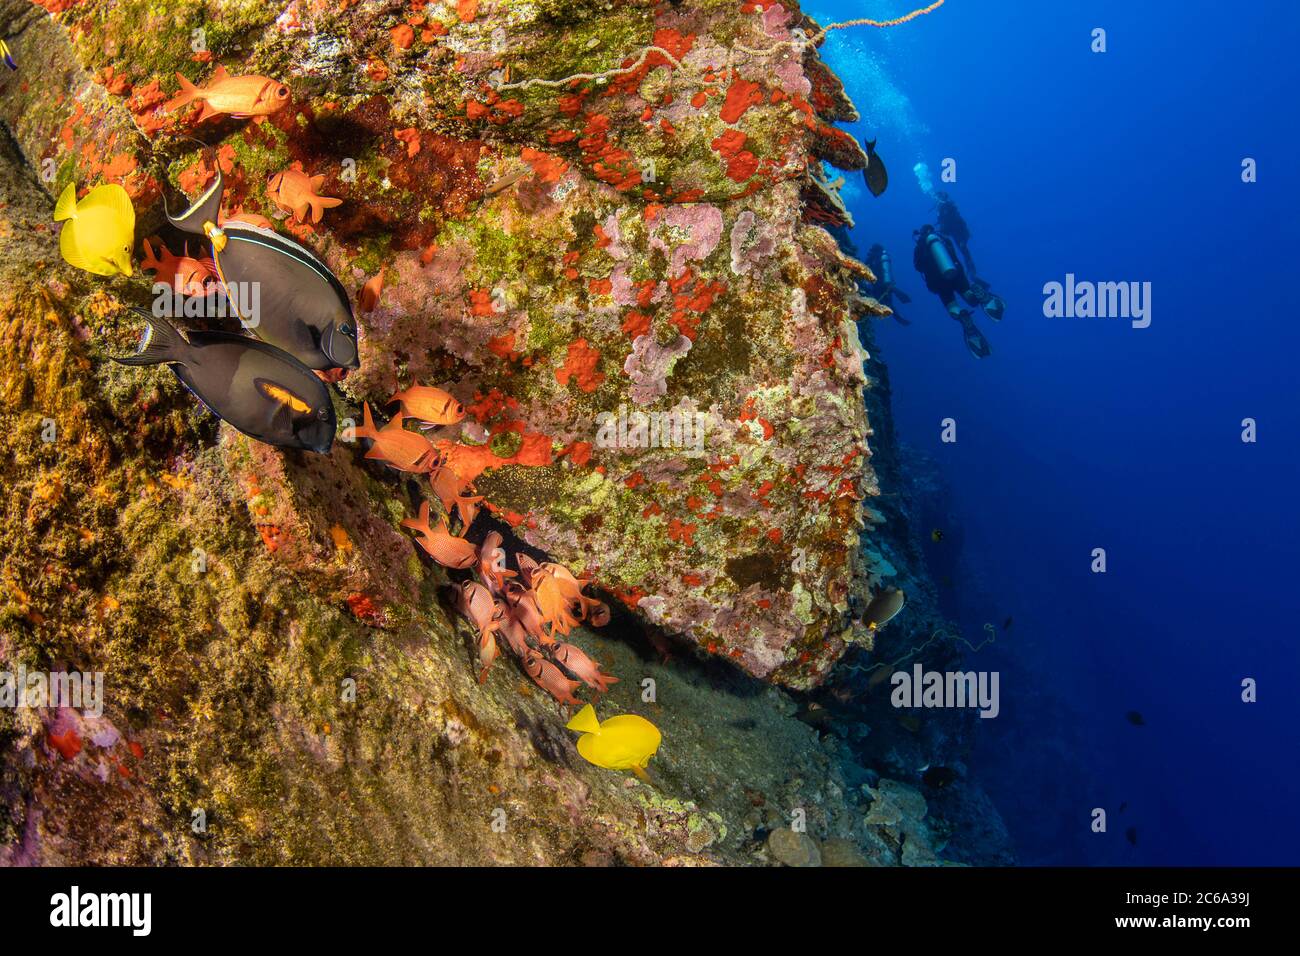 Le mur du fond de la réserve marine Molokini descend à 300 mètres. Plusieurs poissons de récif s'accumulent près d'un crevasseur ici, Maui, Hawaii. Banque D'Images